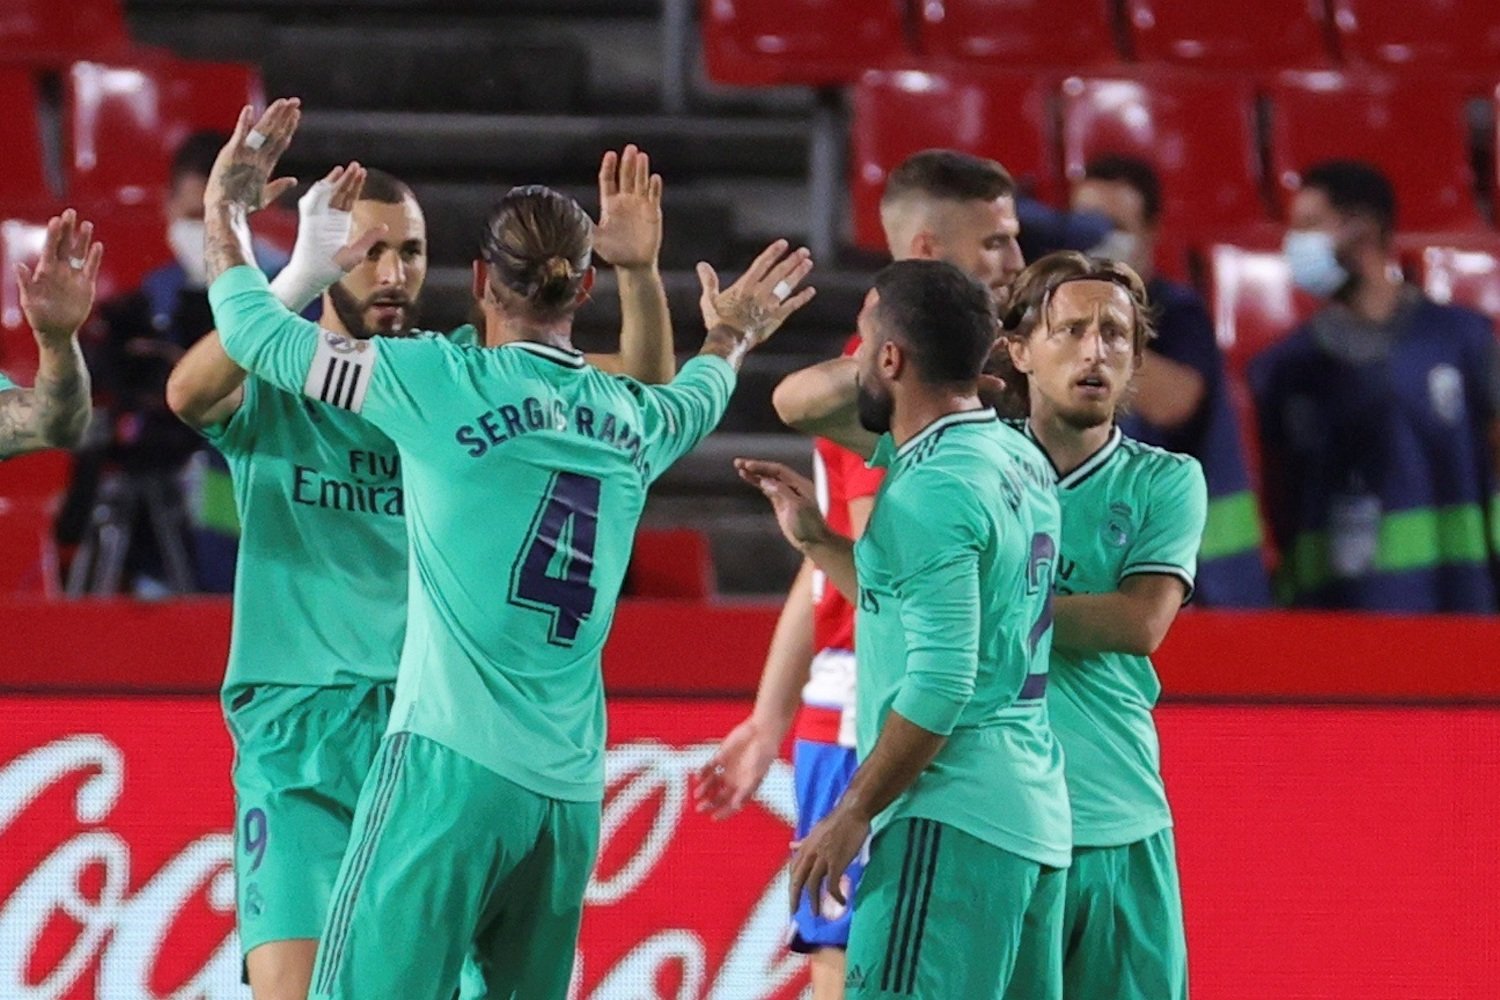 El Reial Madrid guanya a Granada i es queda a un pas del títol (1-2)